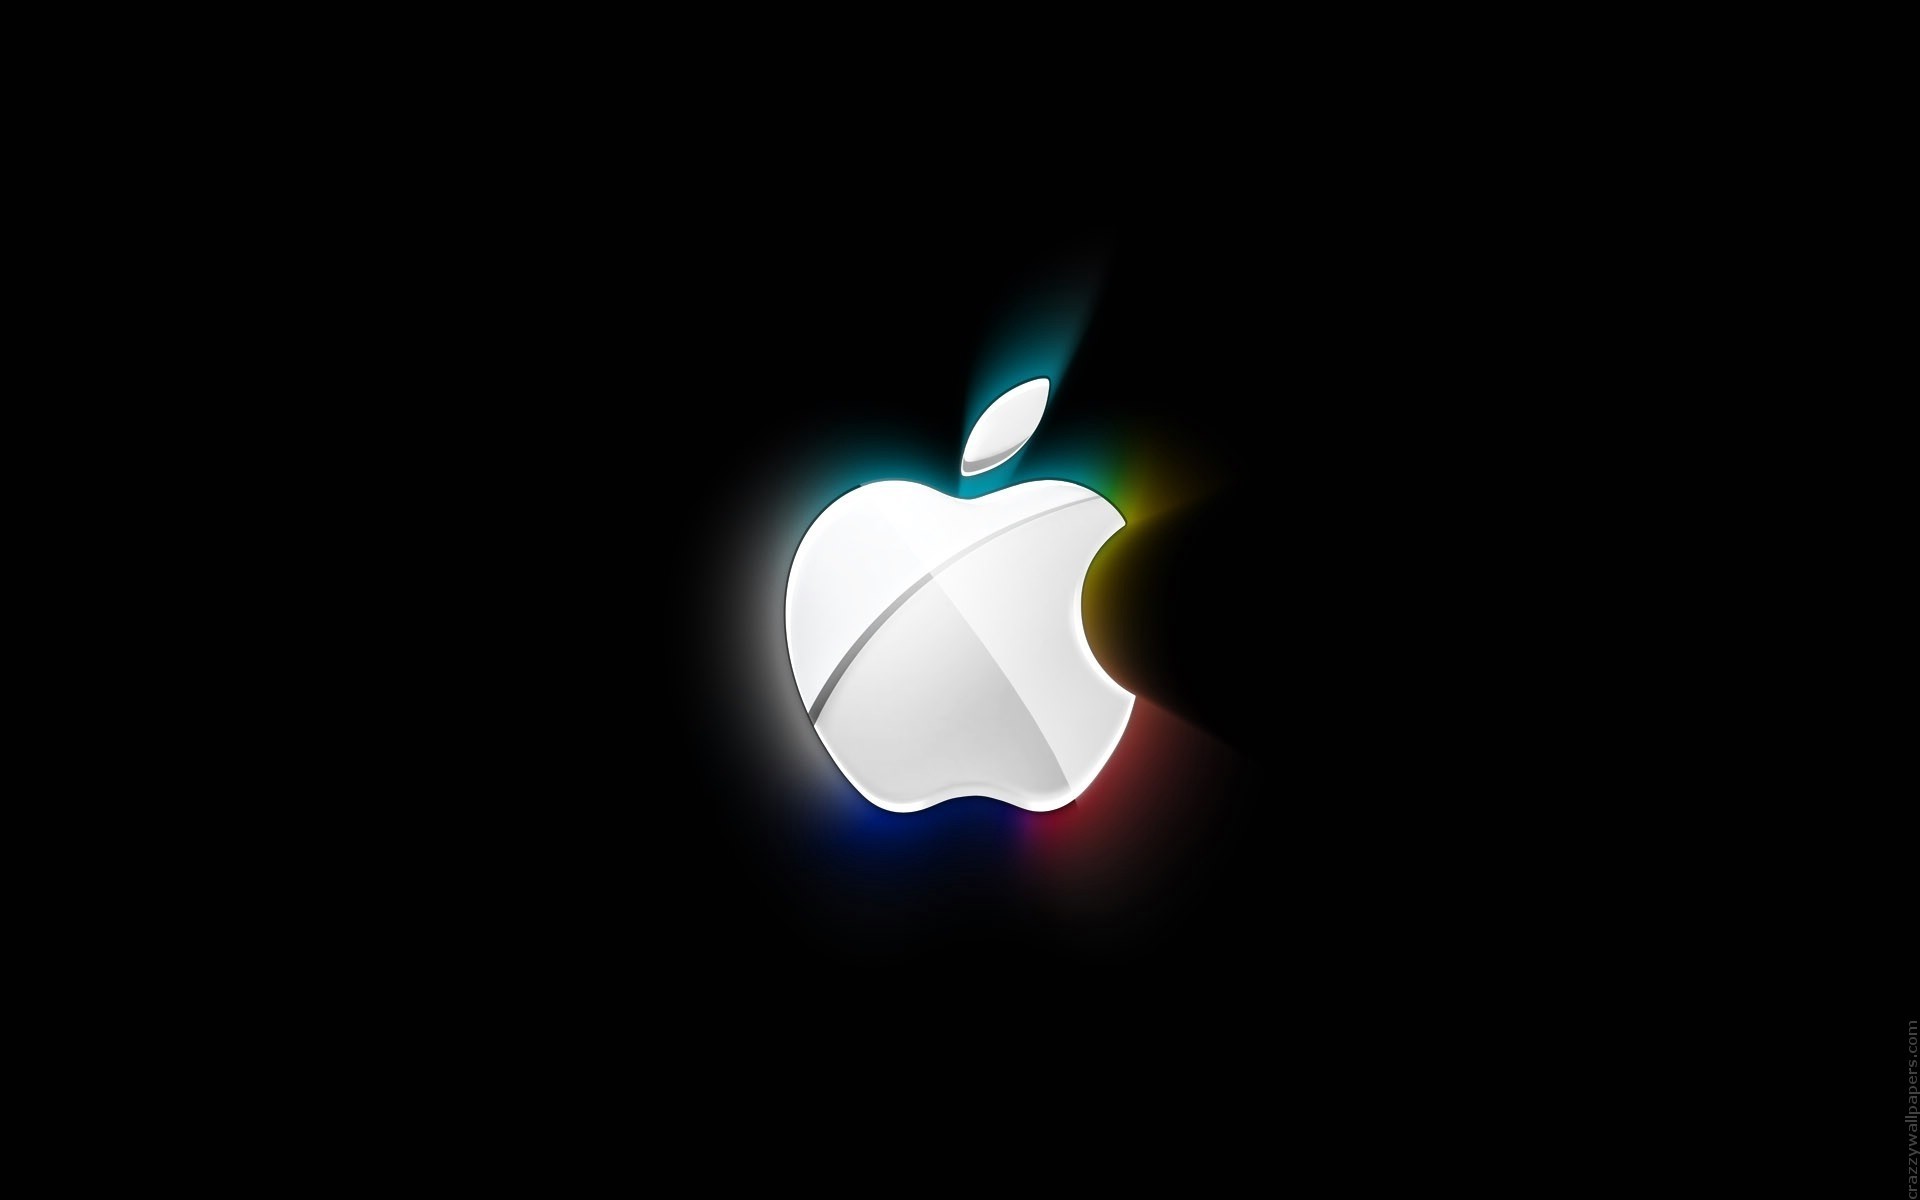 apple свет дизайн искусство рабочего стола аннотация иллюстрация график яркий формы цвет темный изображения пламя